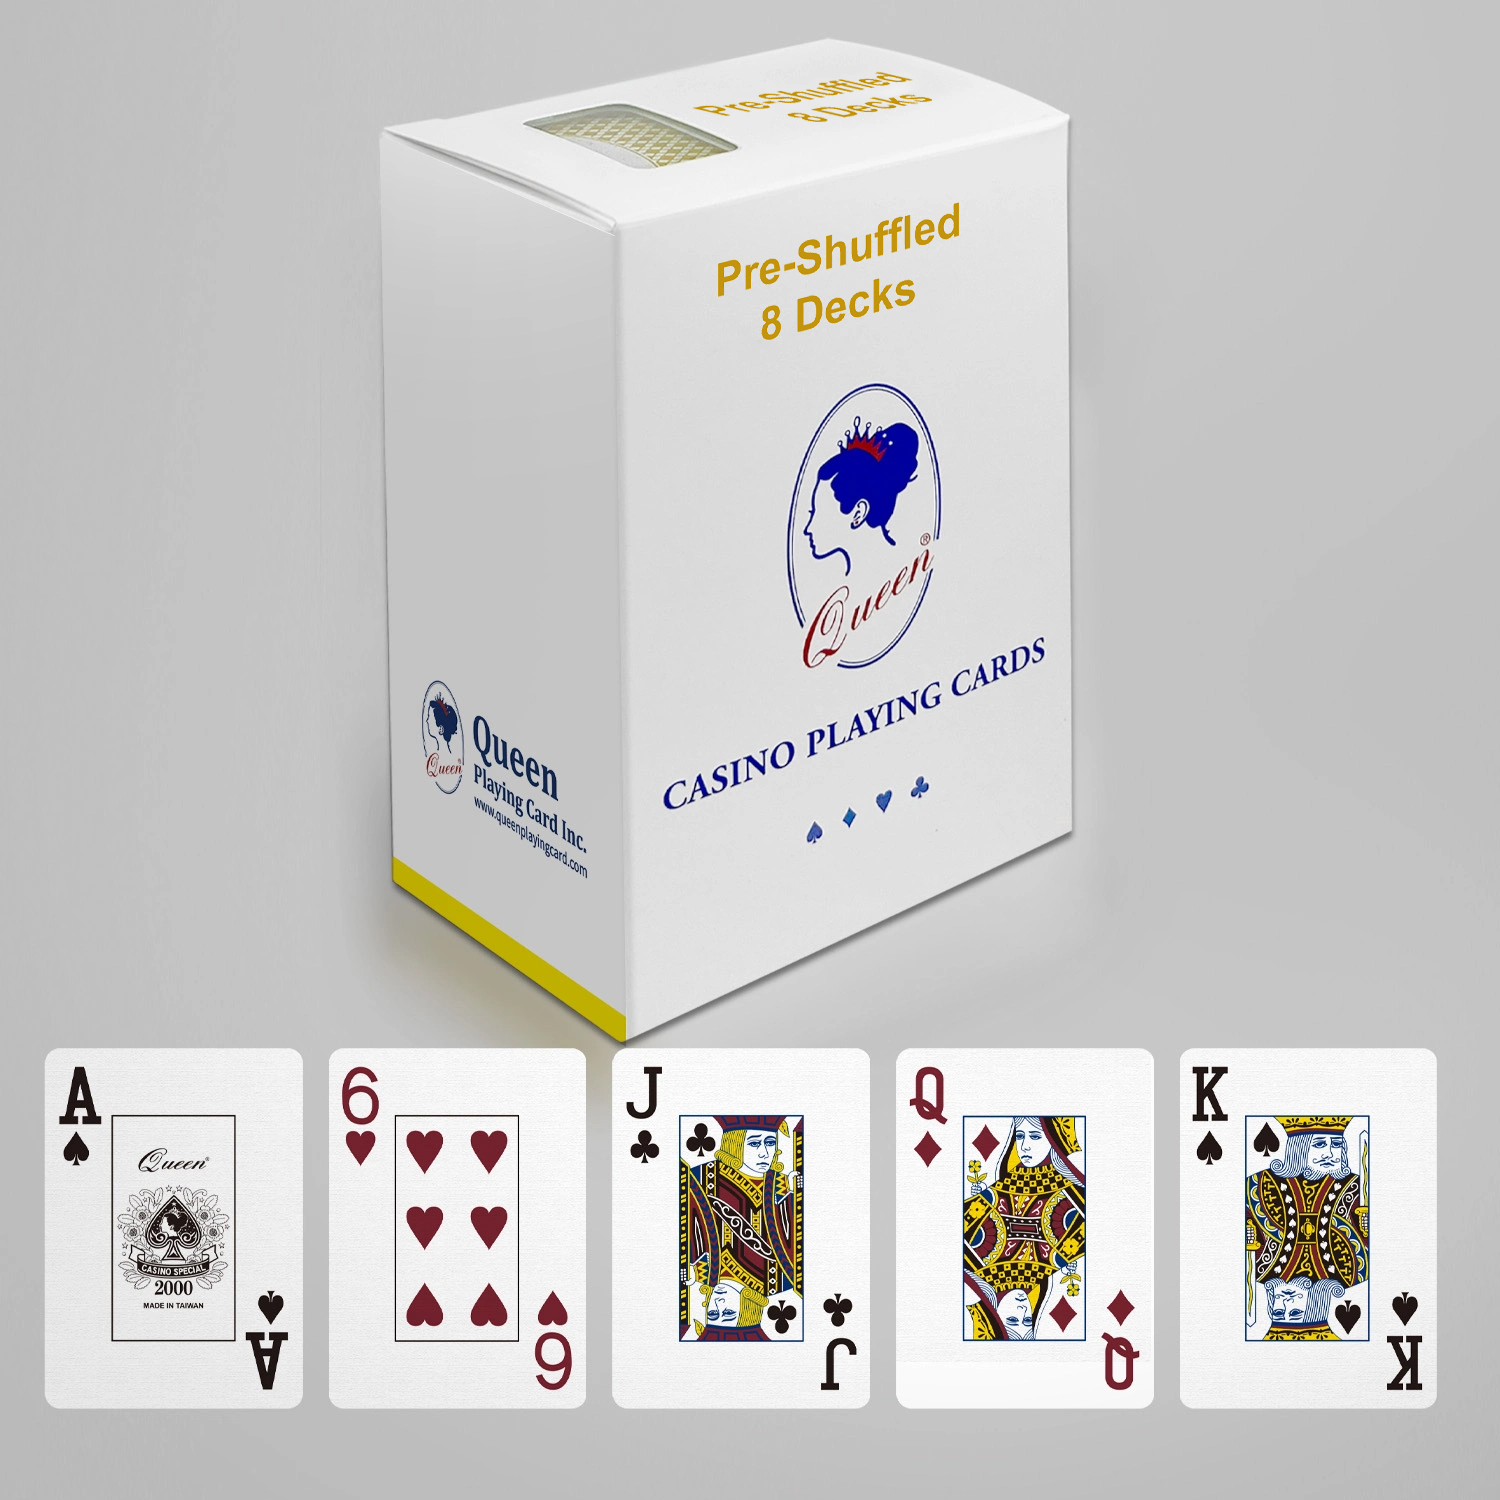 Professionelle Kartenspielkarten aus Papier, Pokergröße – Standard-Index – 8 Decks, vorgemischt erhältlich